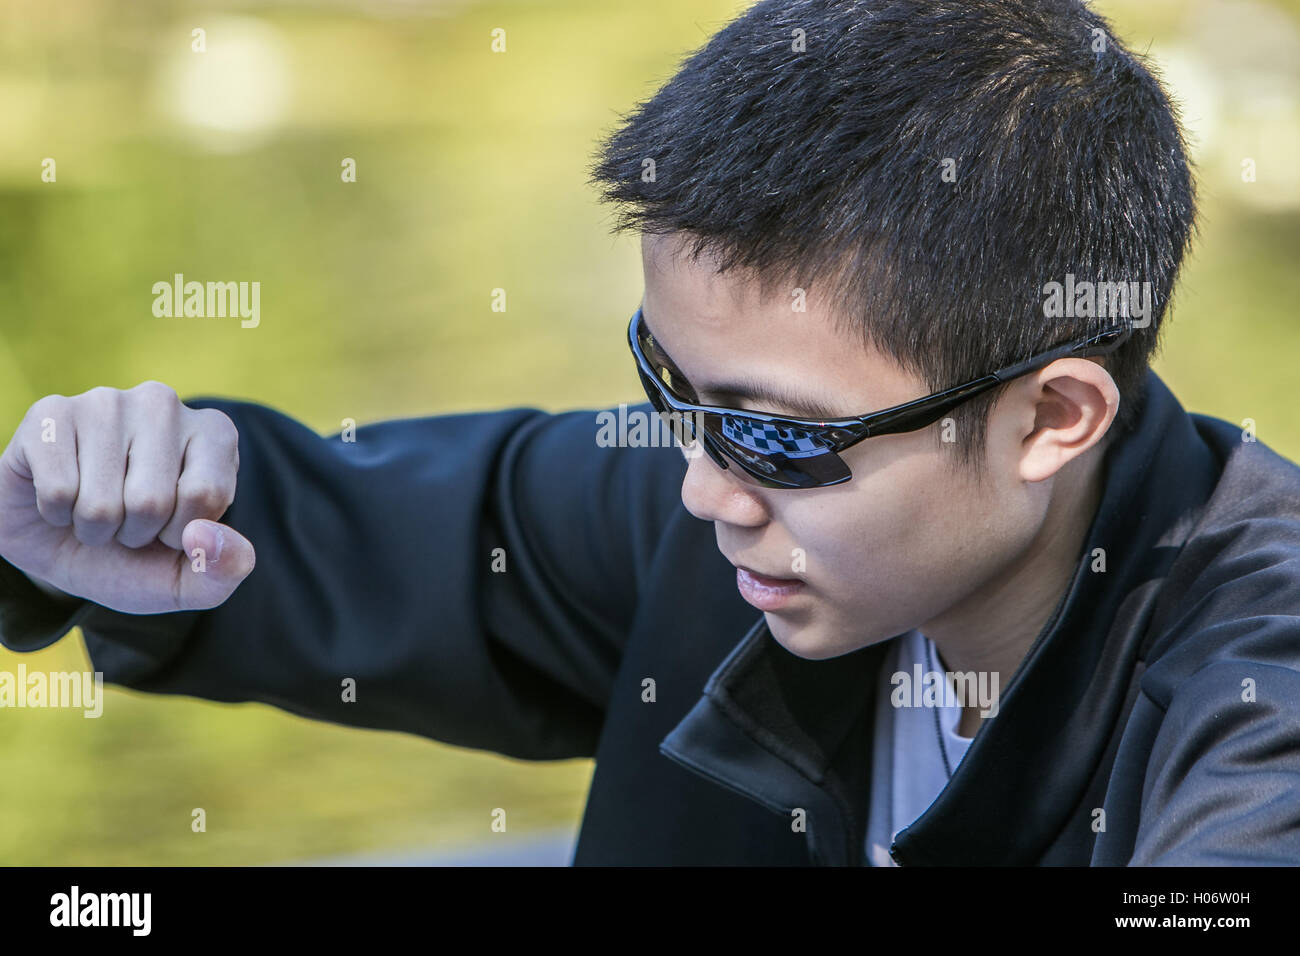 Ein Junge macht eine Bewegung während einer Partie Schach. Das Schachbrett spiegelt sich in seine Sonnenbrille. Stockfoto